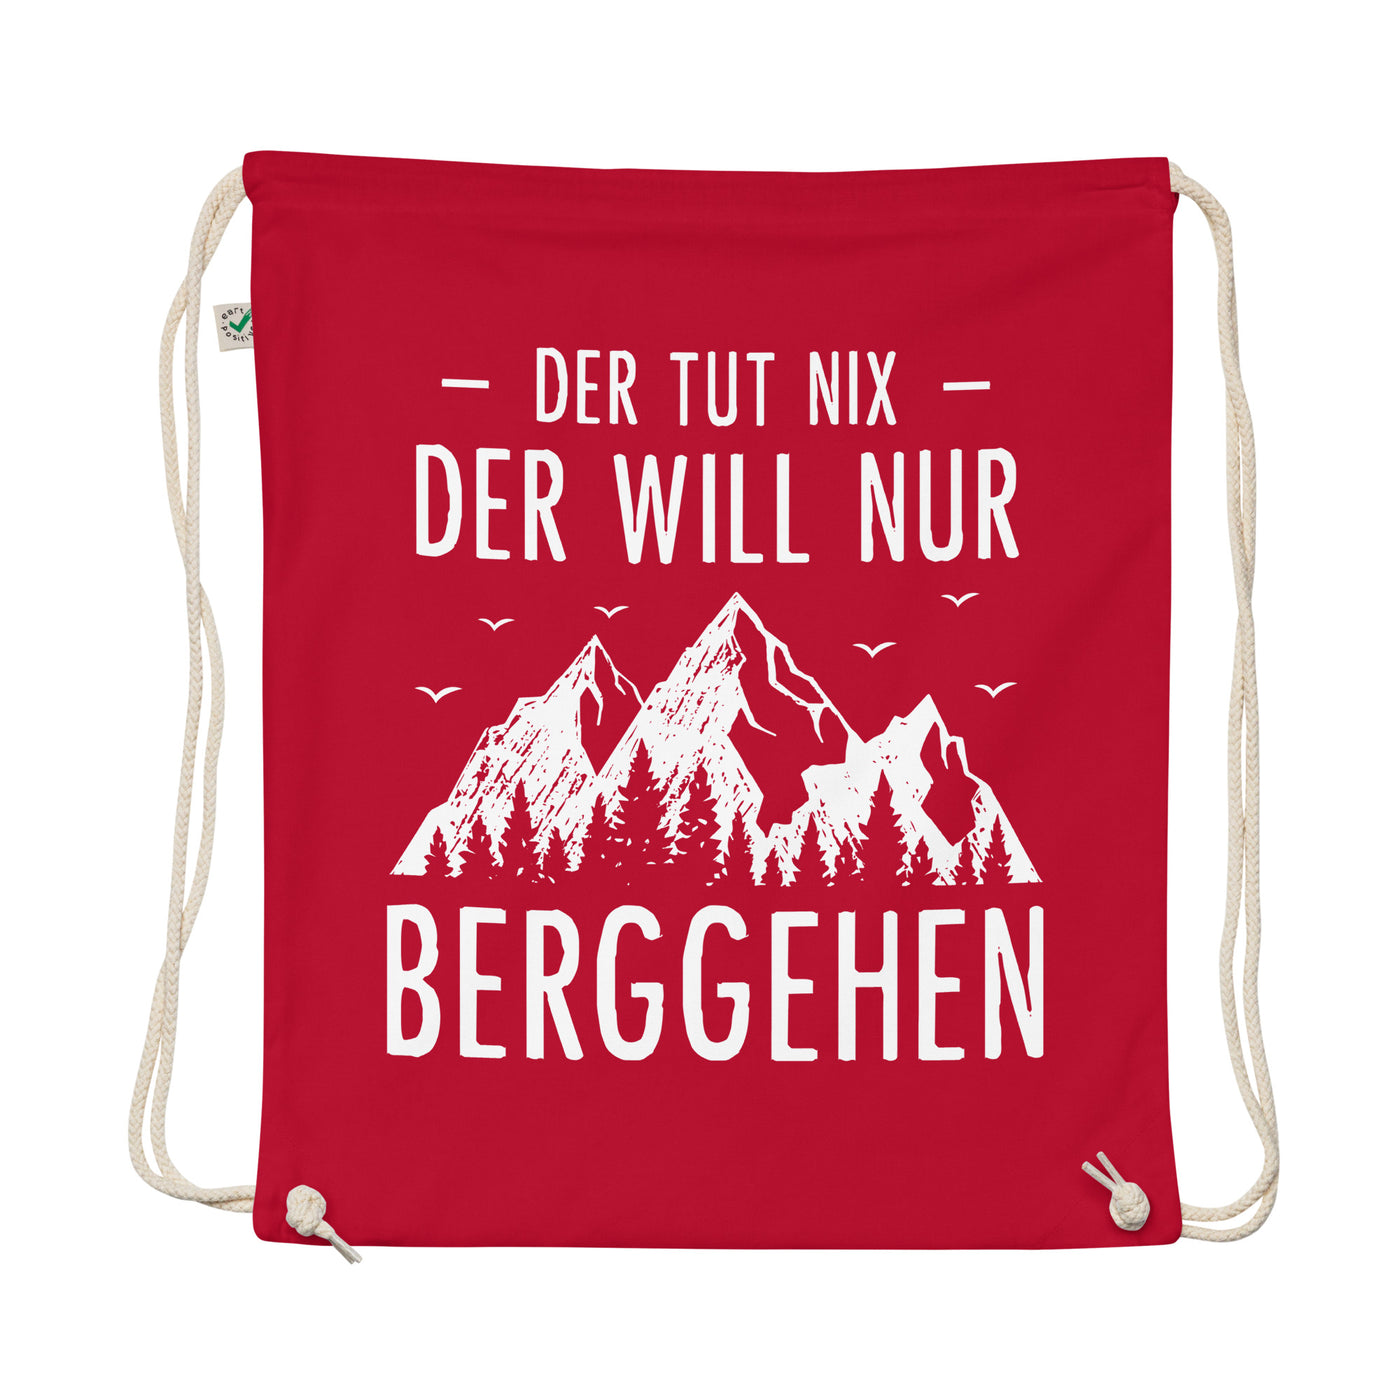 Der Tut Nix Der Will Nur Berggehen - Organic Turnbeutel berge